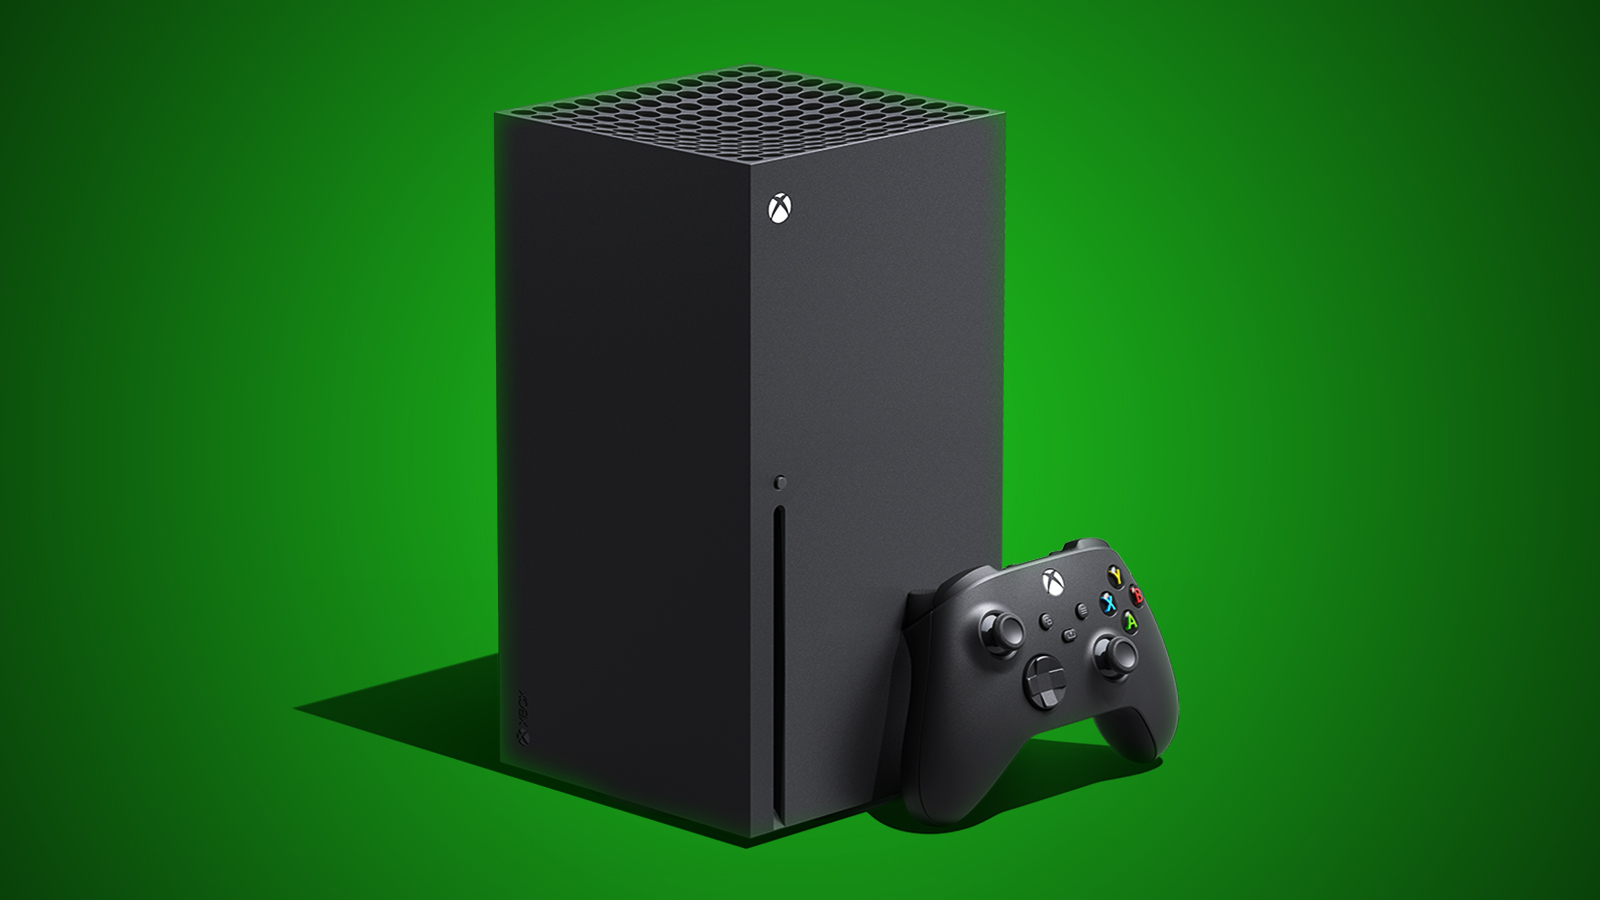 Xbox Series S - Testando Vários jogos a 4K HDR Review. 